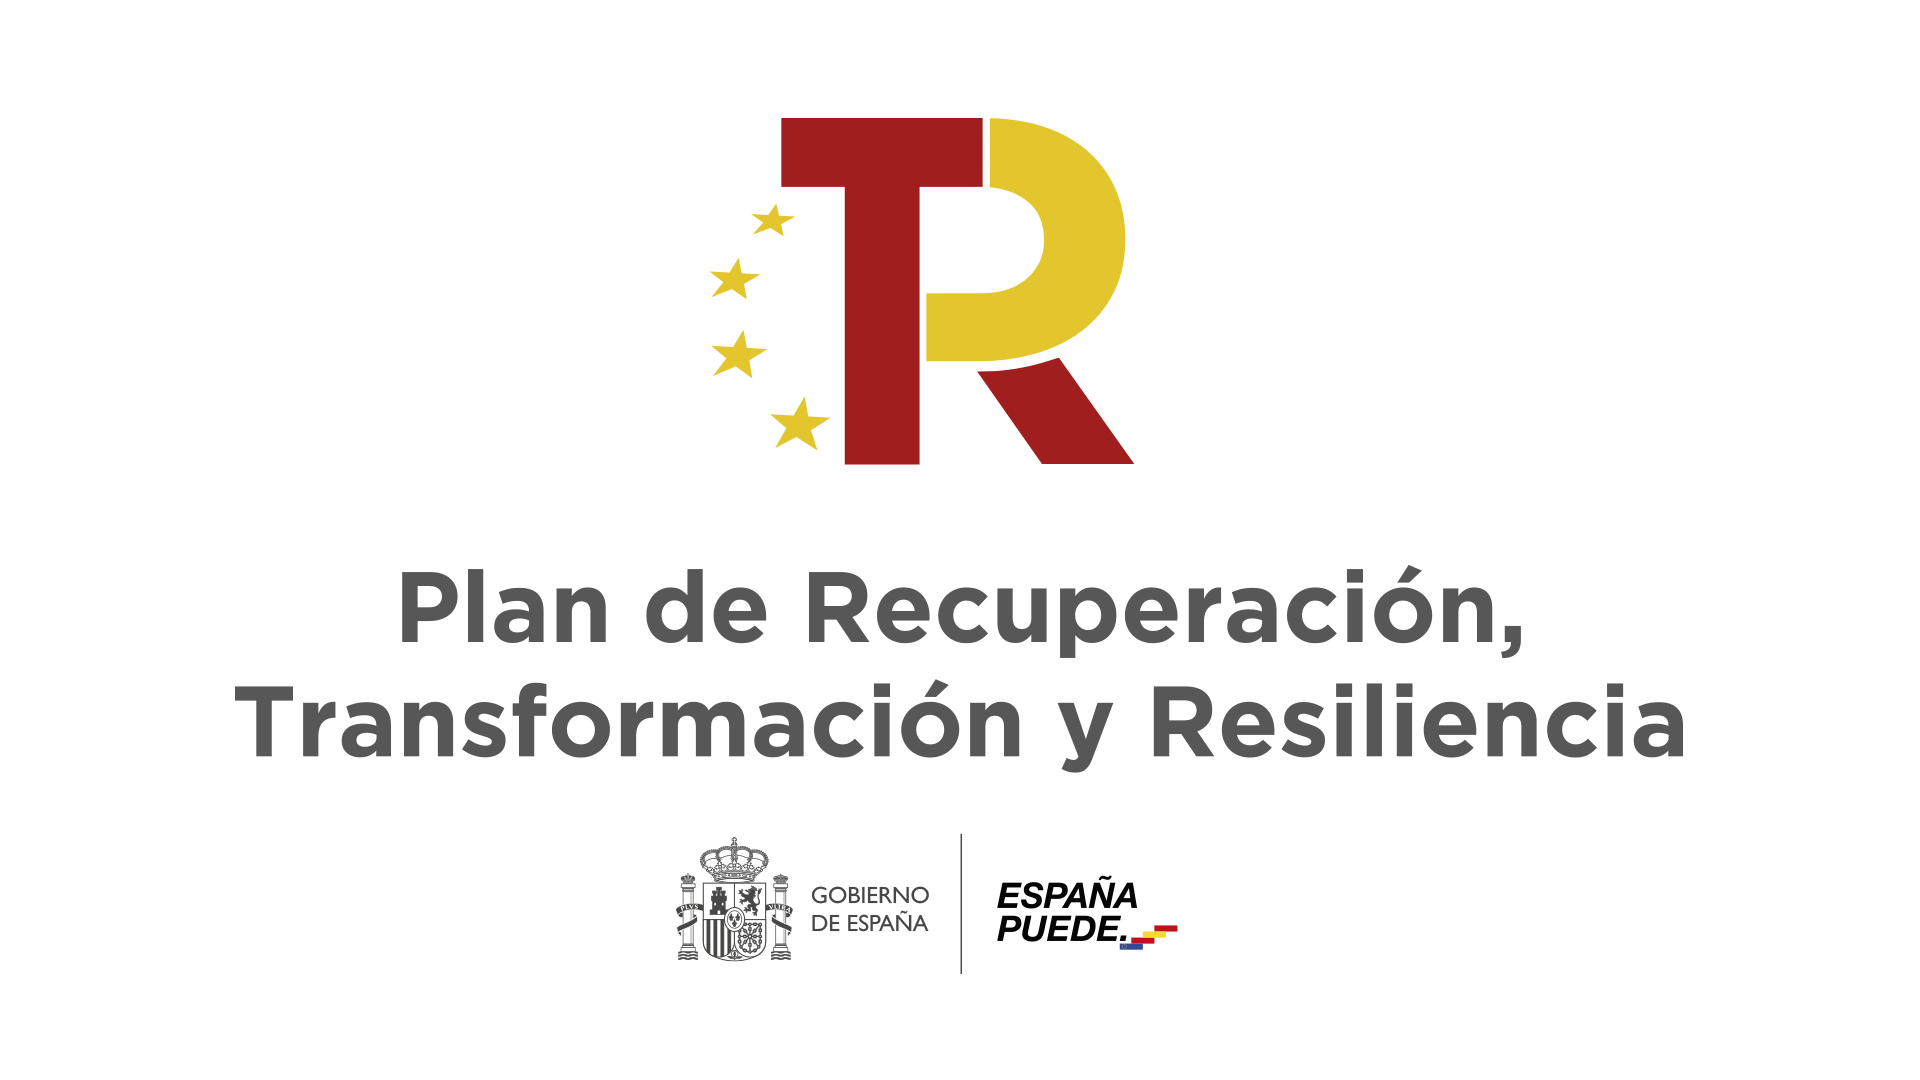 Logotipo Plan de Recuperación Transformación y Resiliencia